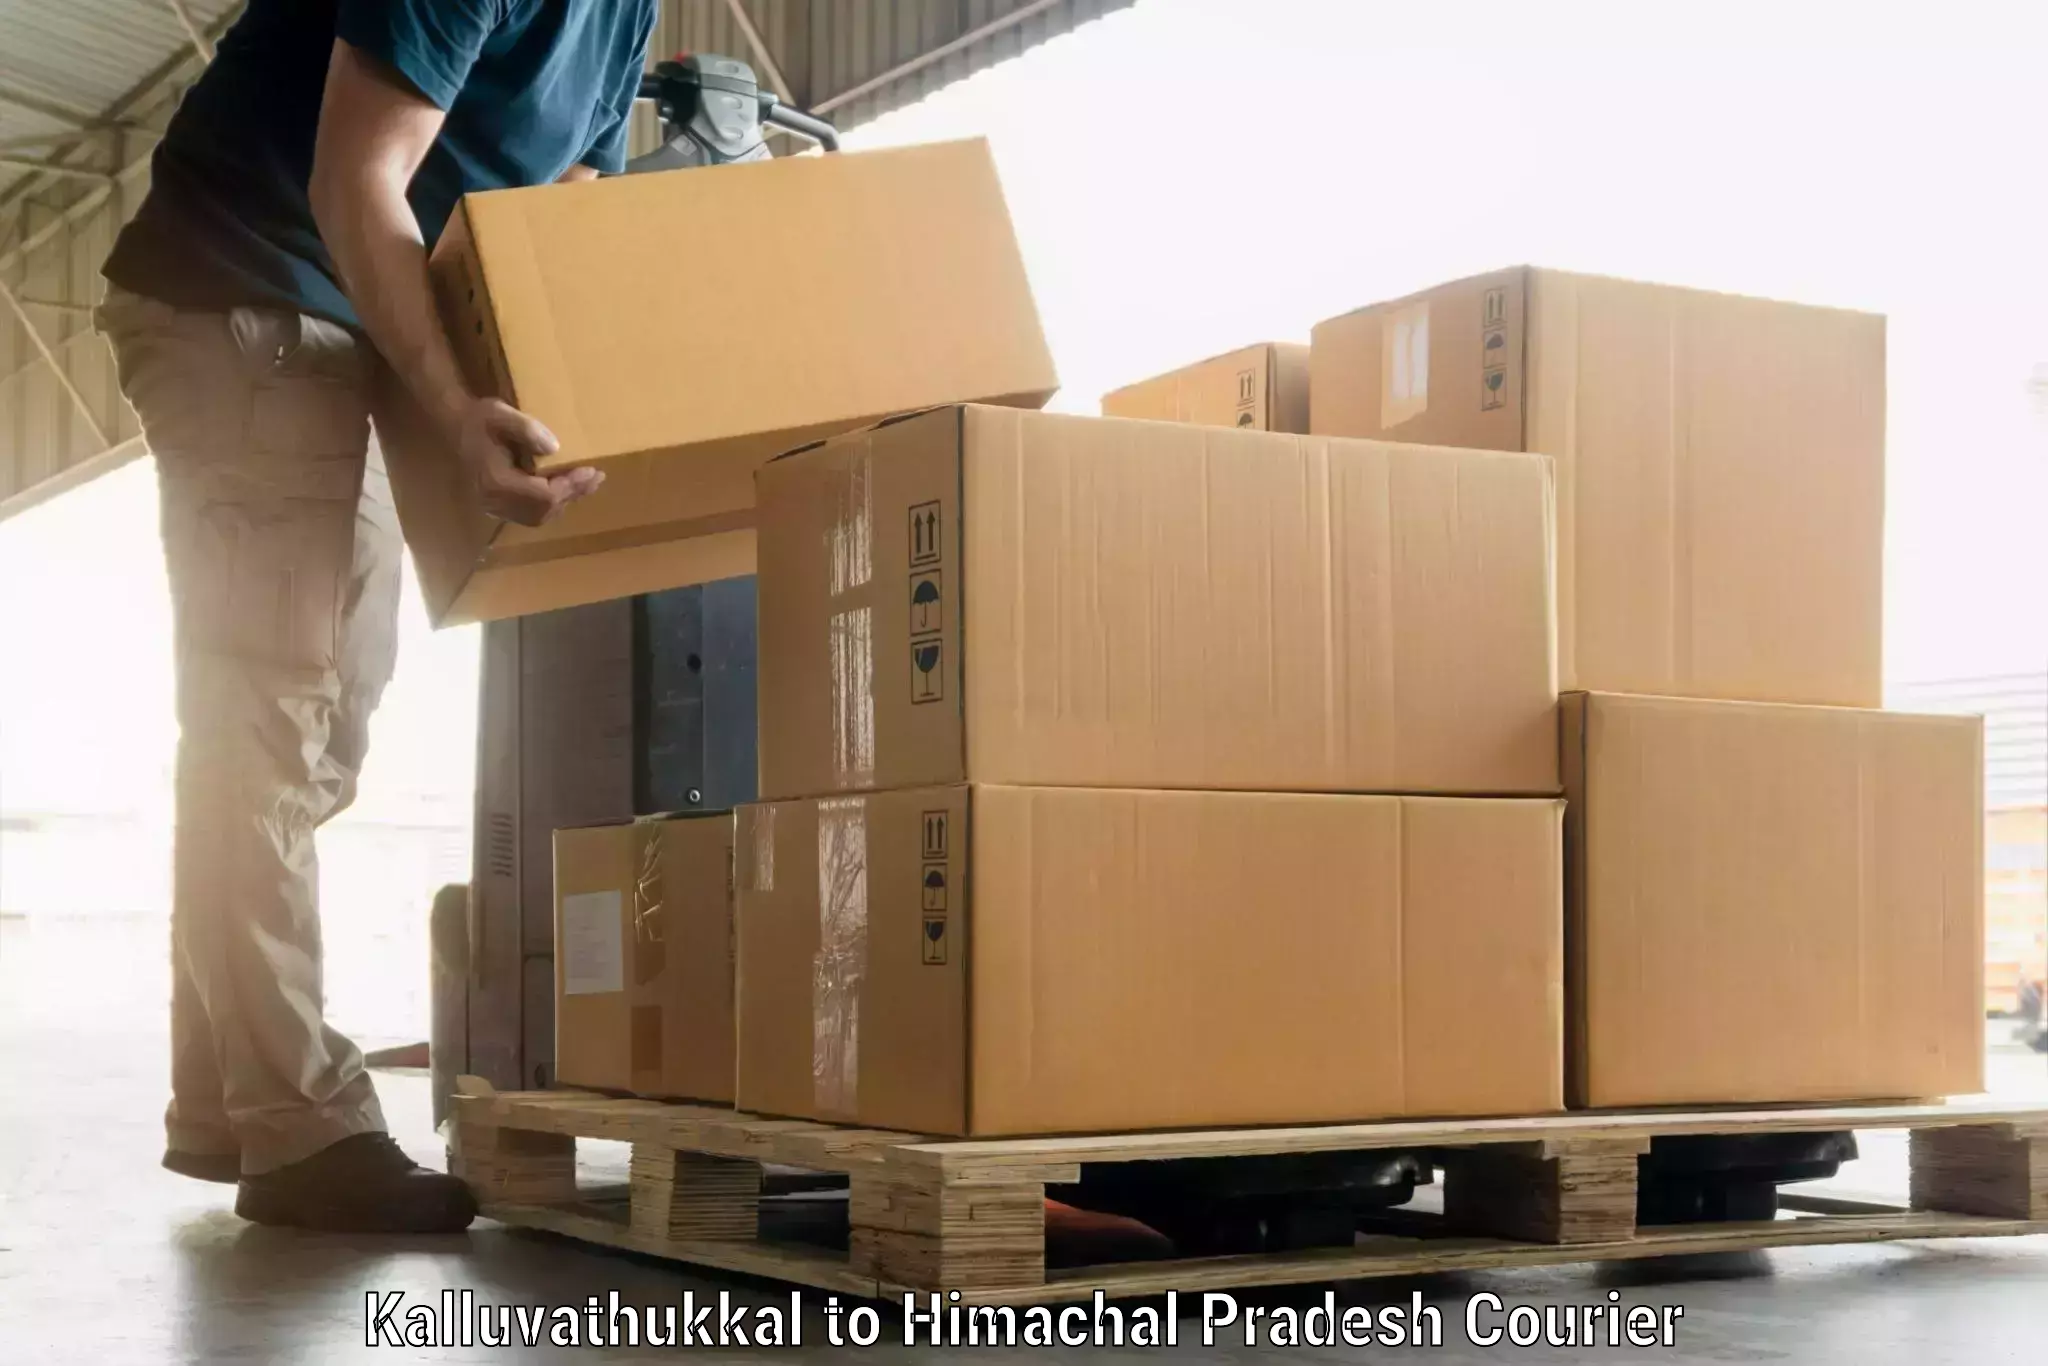 Luggage shipment specialists Kalluvathukkal to Jukhala